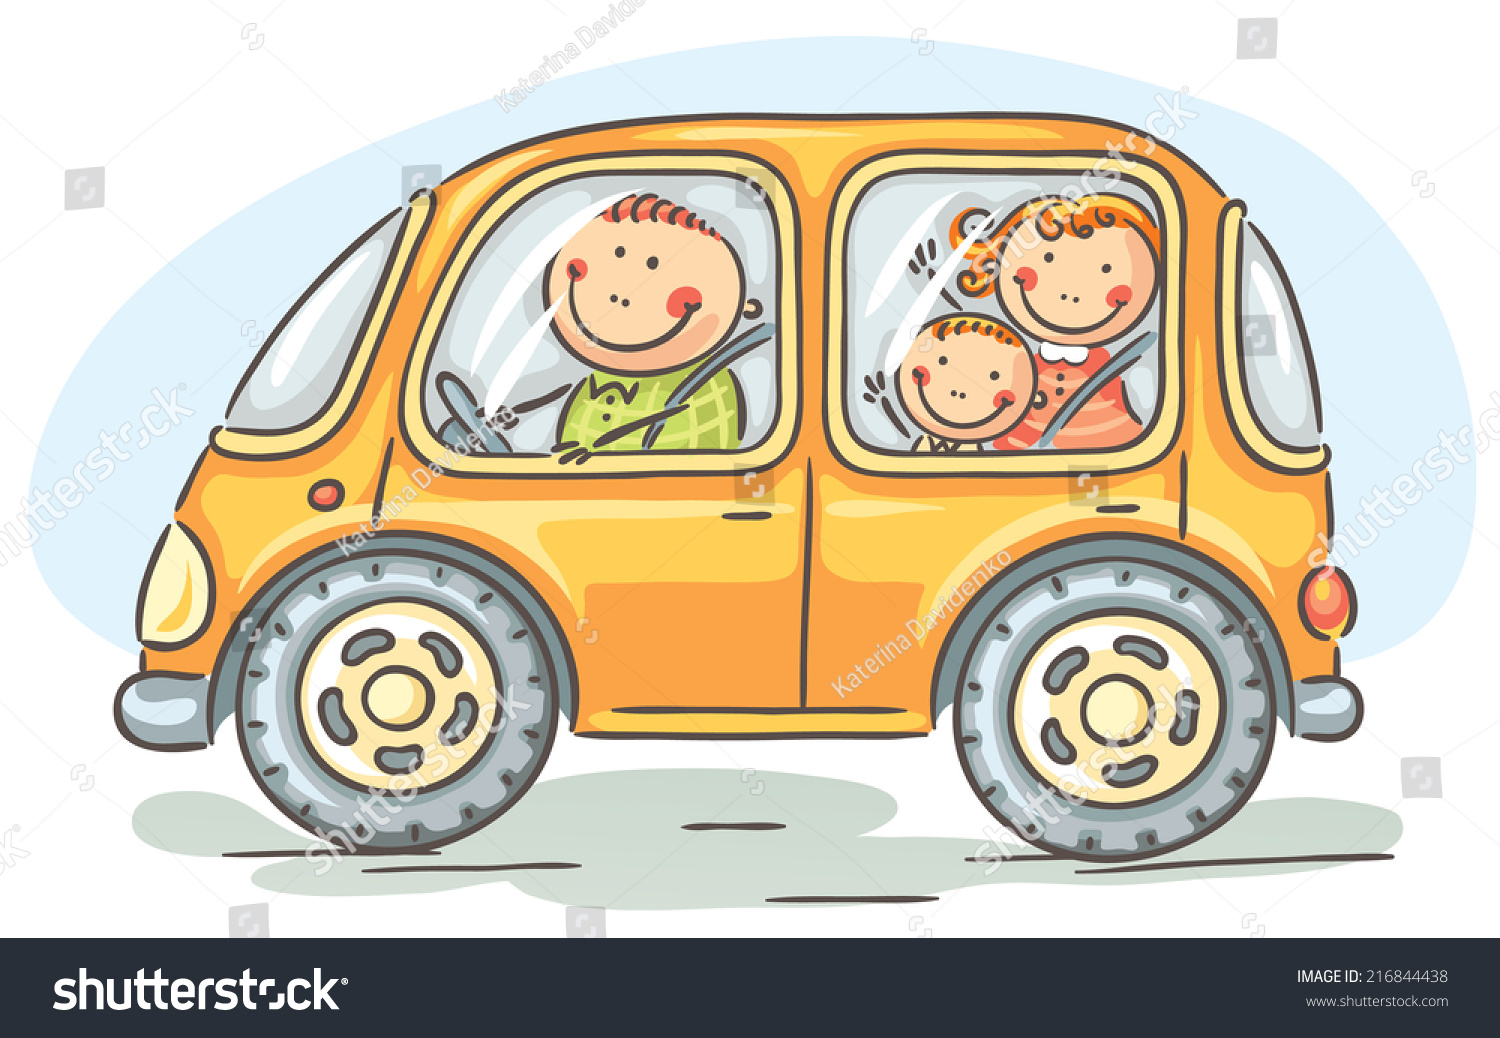 Семья в машине мультяшная